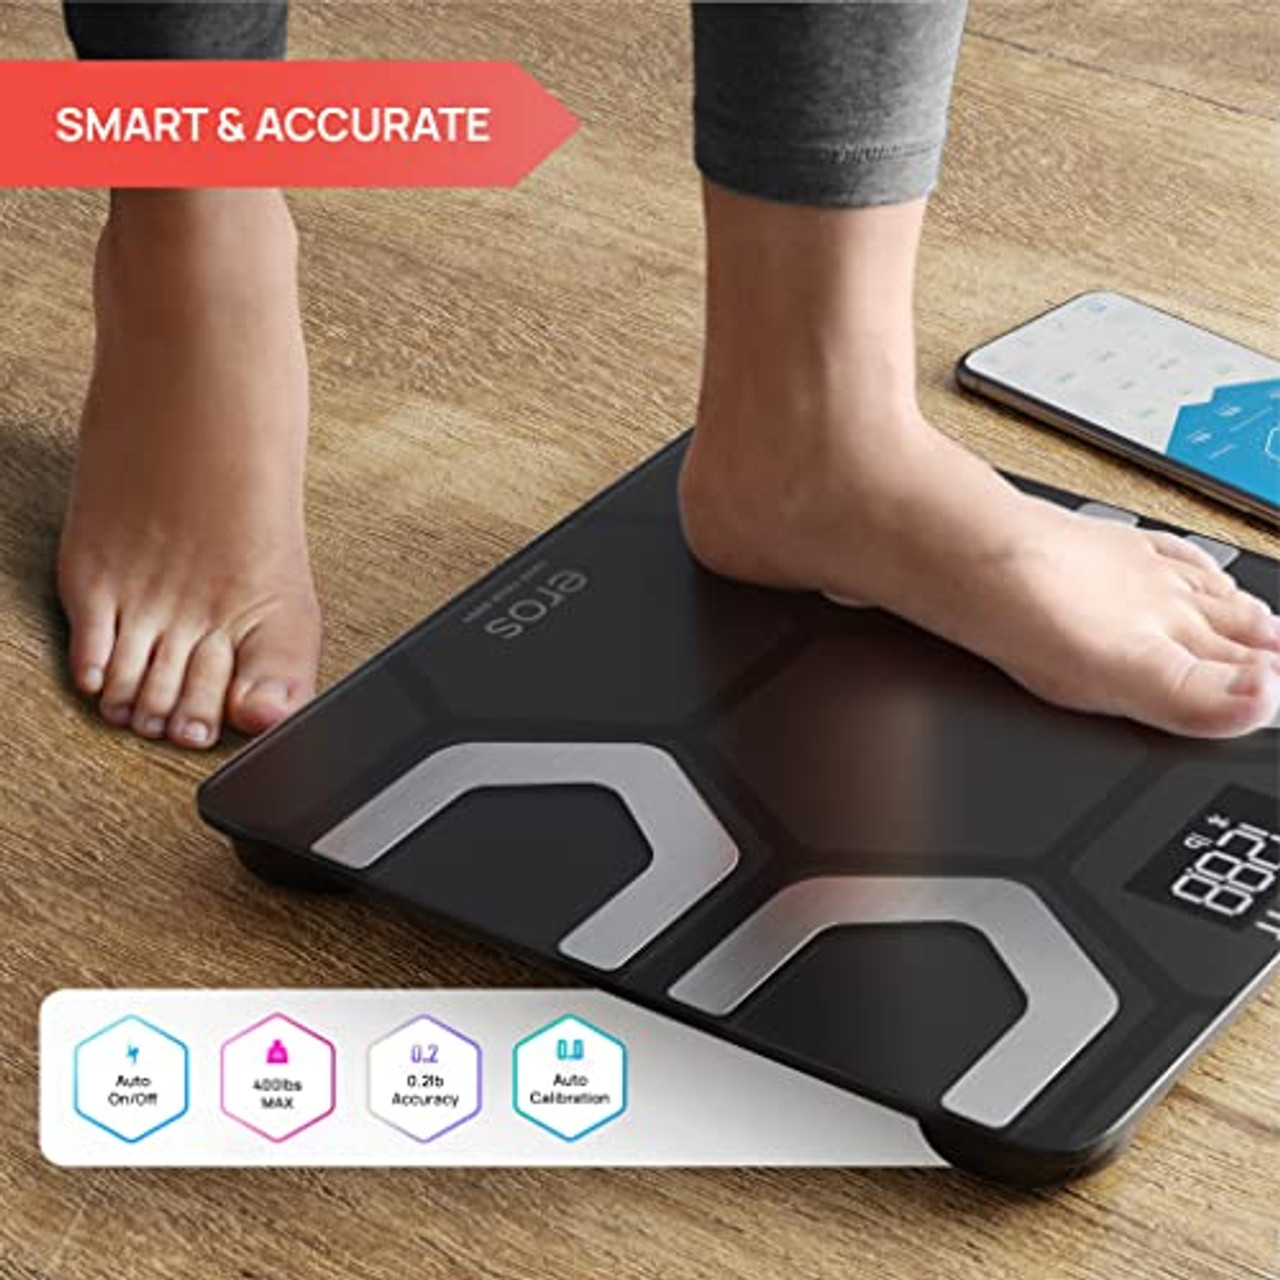 Smart Bluetooth Body Fat Scale, HYLOGY Wireless Digital Bathroom